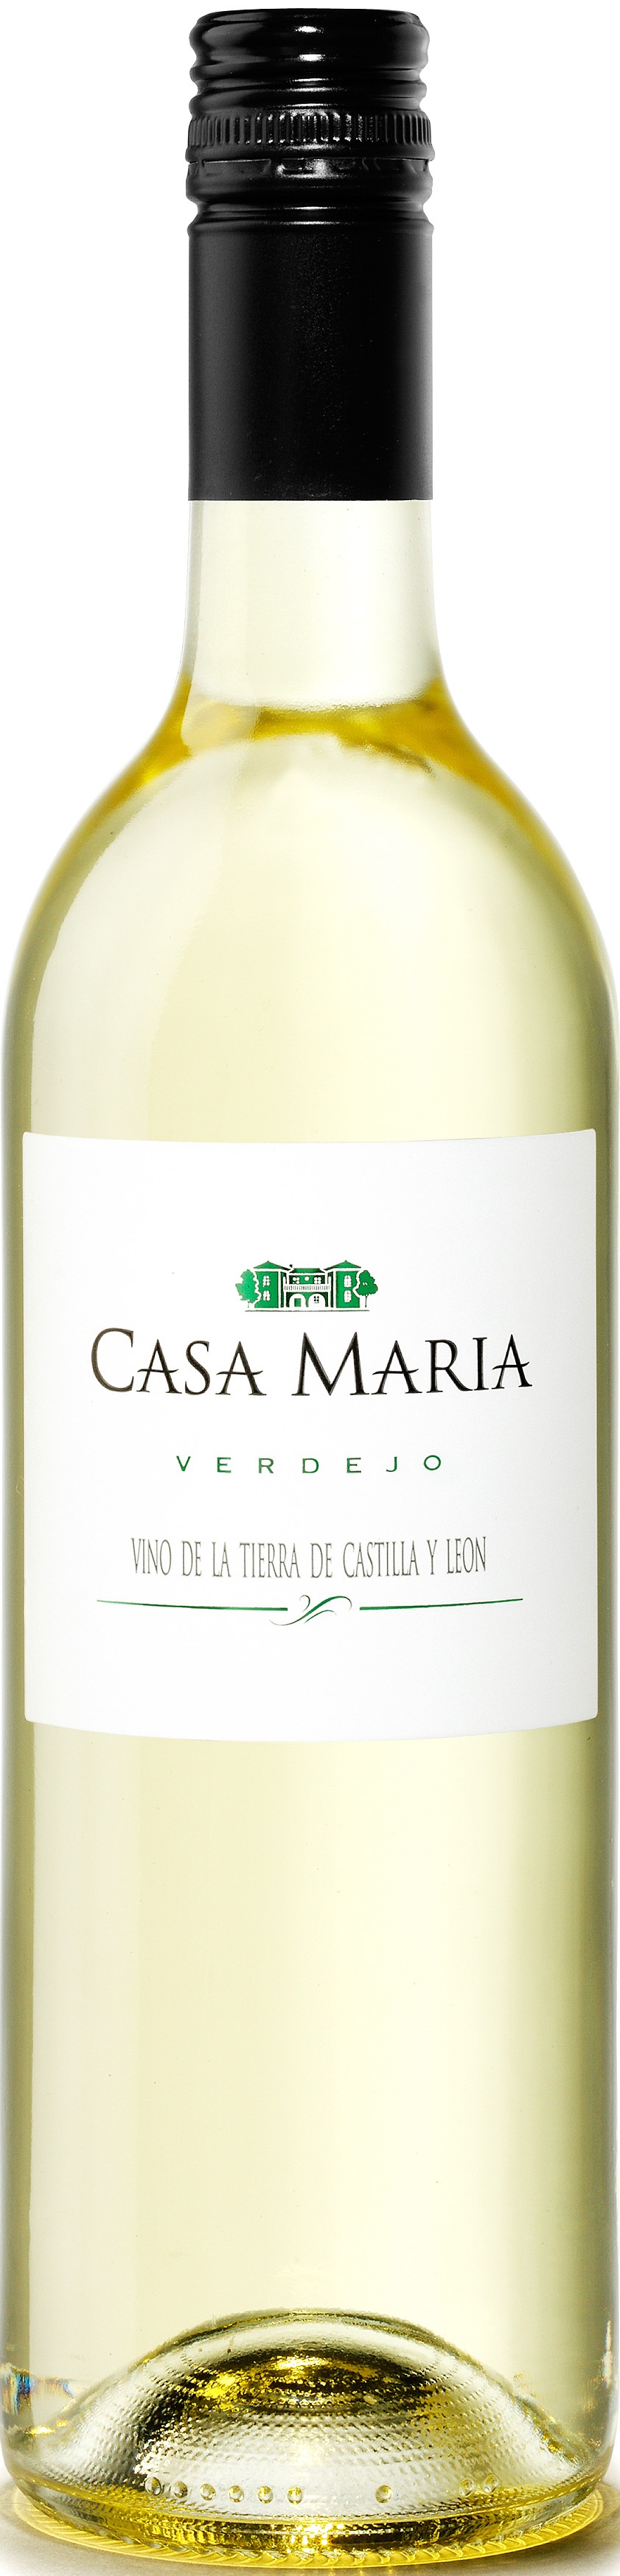 Imagen de la botella de Vino Casa María Verdejo